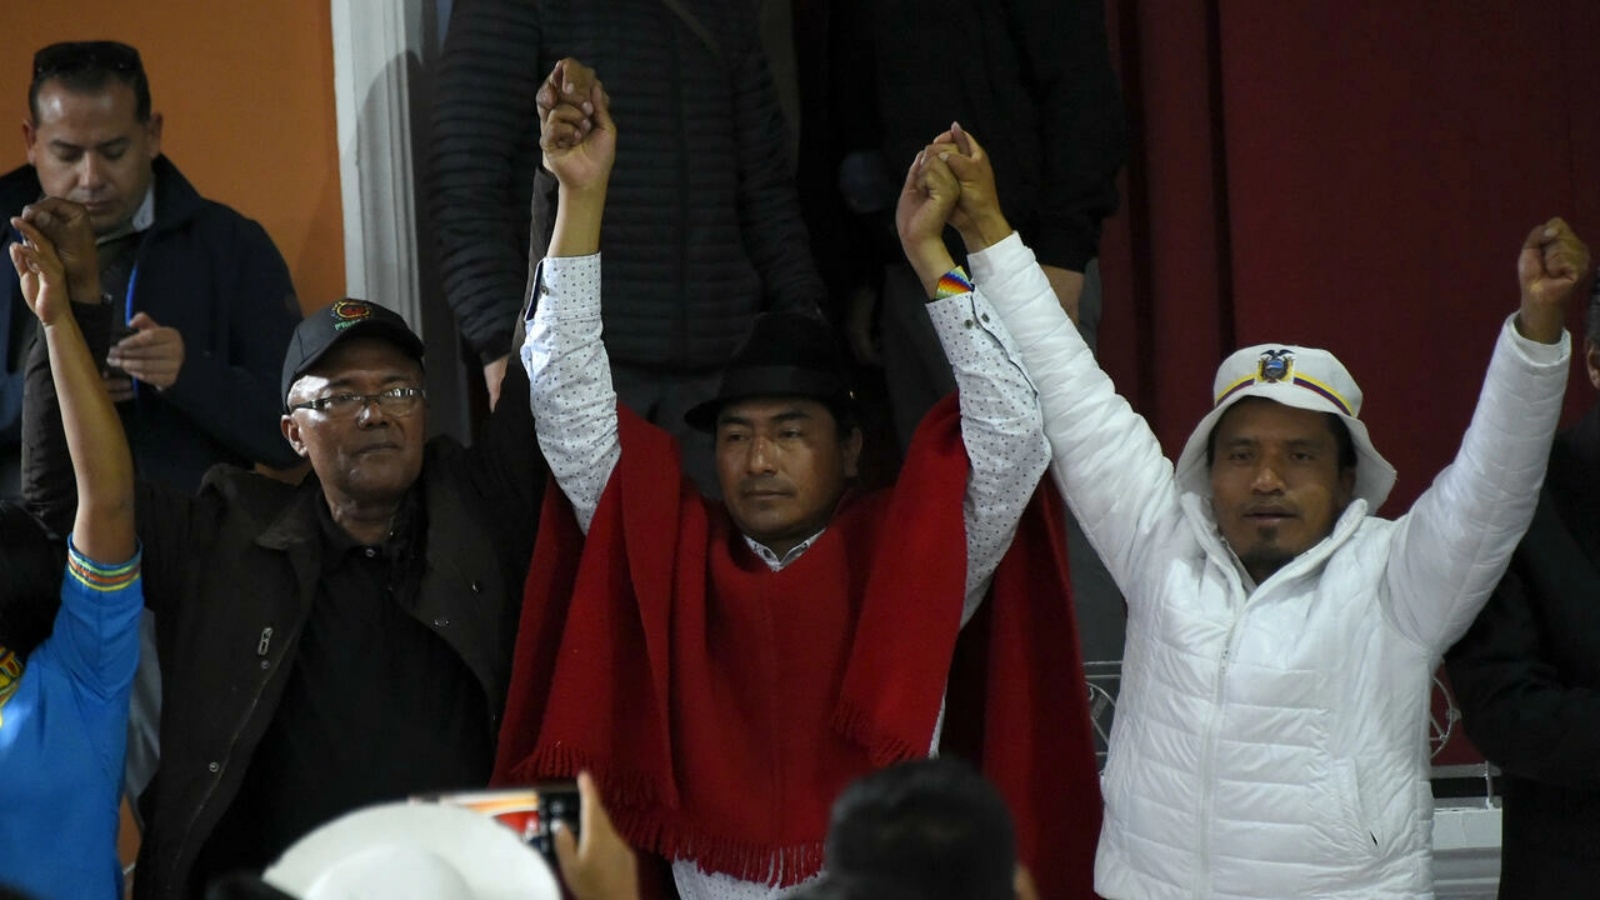 زعيم السكان الأصليين ليونيداس إيسا (وسط) ومسؤولون آخرون للسكان الأصليين يرفعون أياديهم بعد توقيع اتفاق مع الحكومة يضع حداً للتظاهرات احتجاجاً على غلاء المعيشة في 30 يونيو 2022